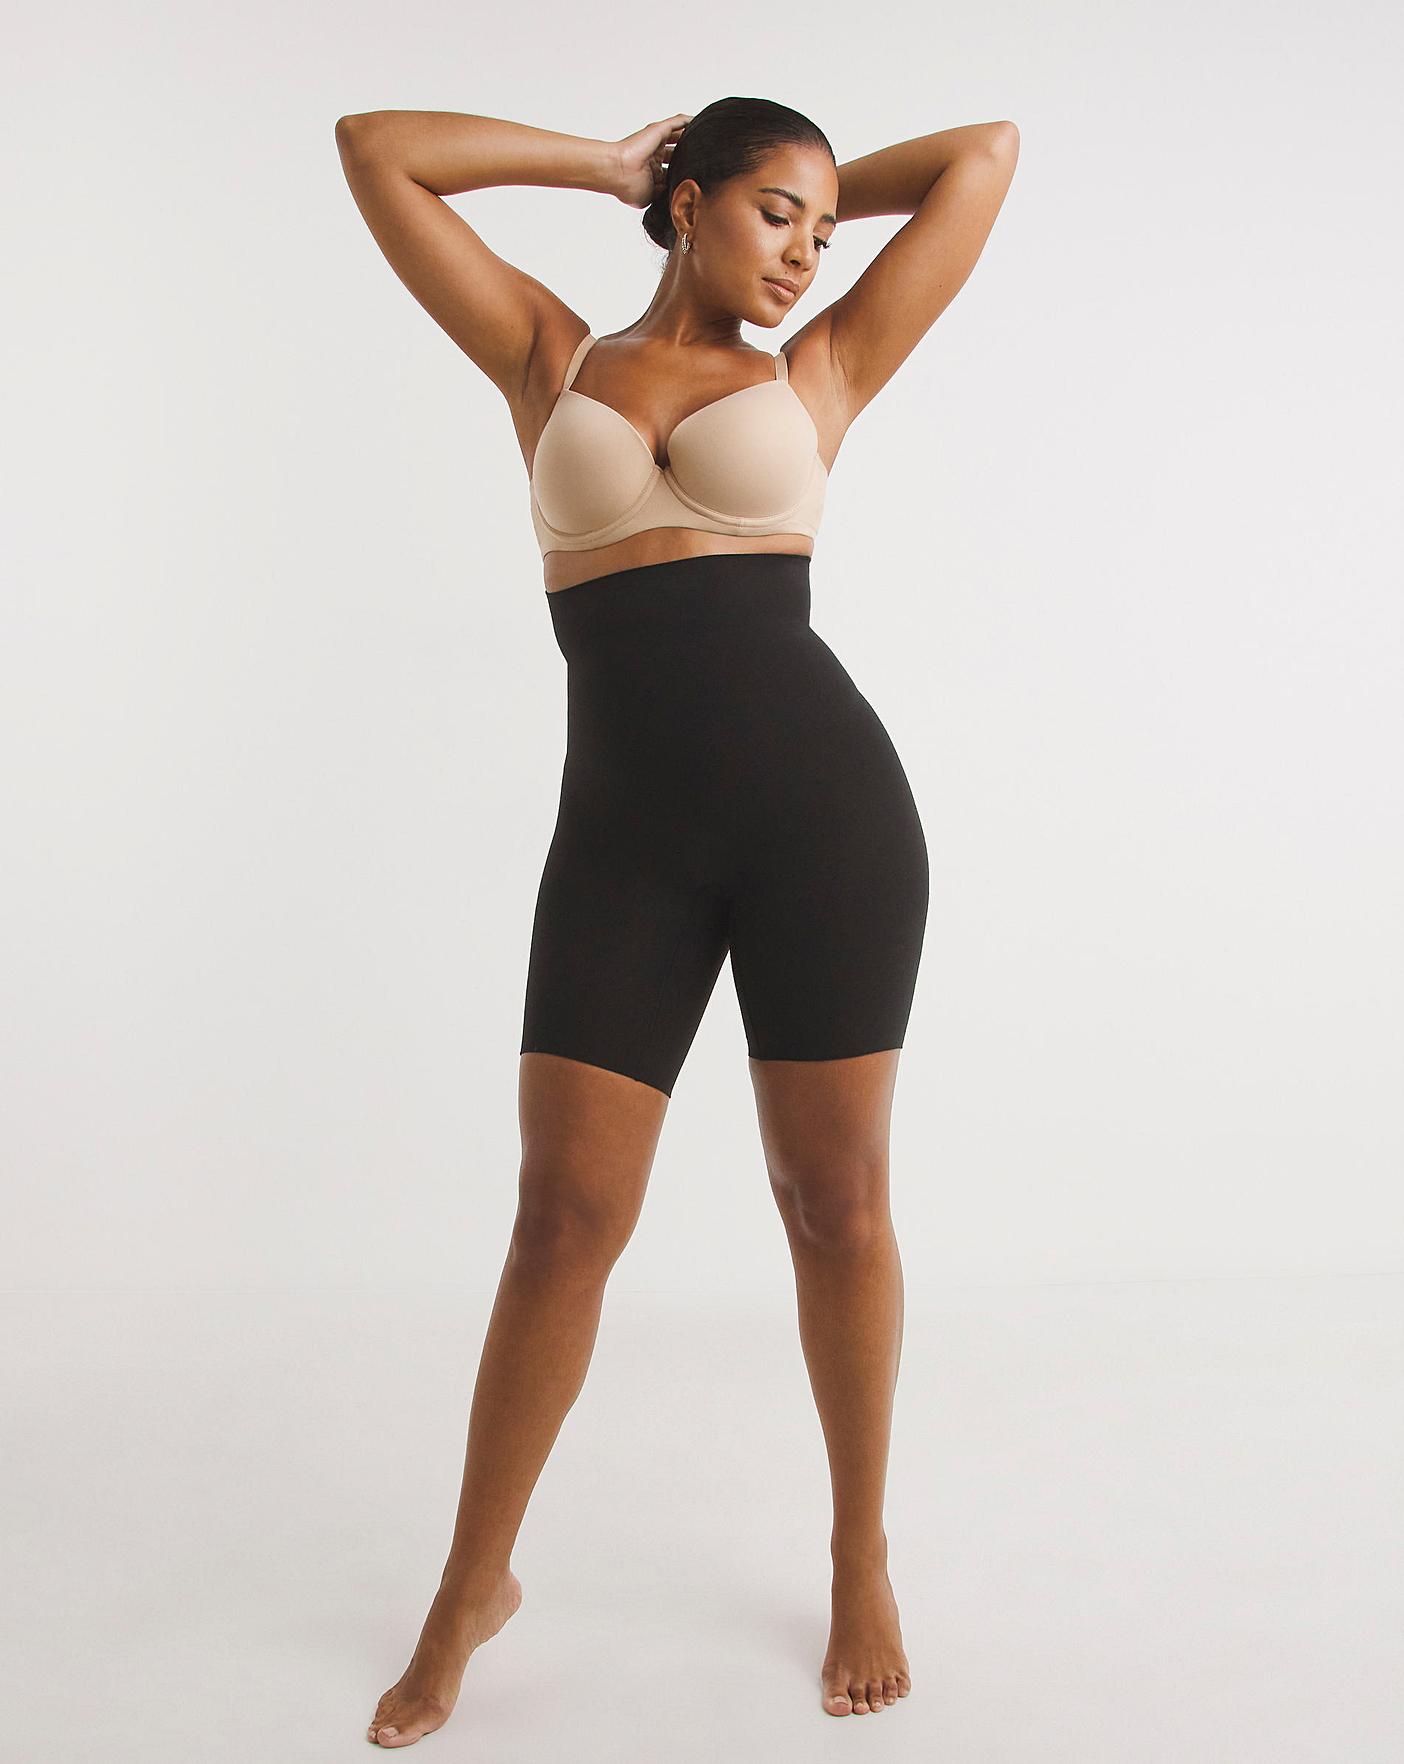 Spanx Women's Plus Size Power Shorts, Black, 1X 